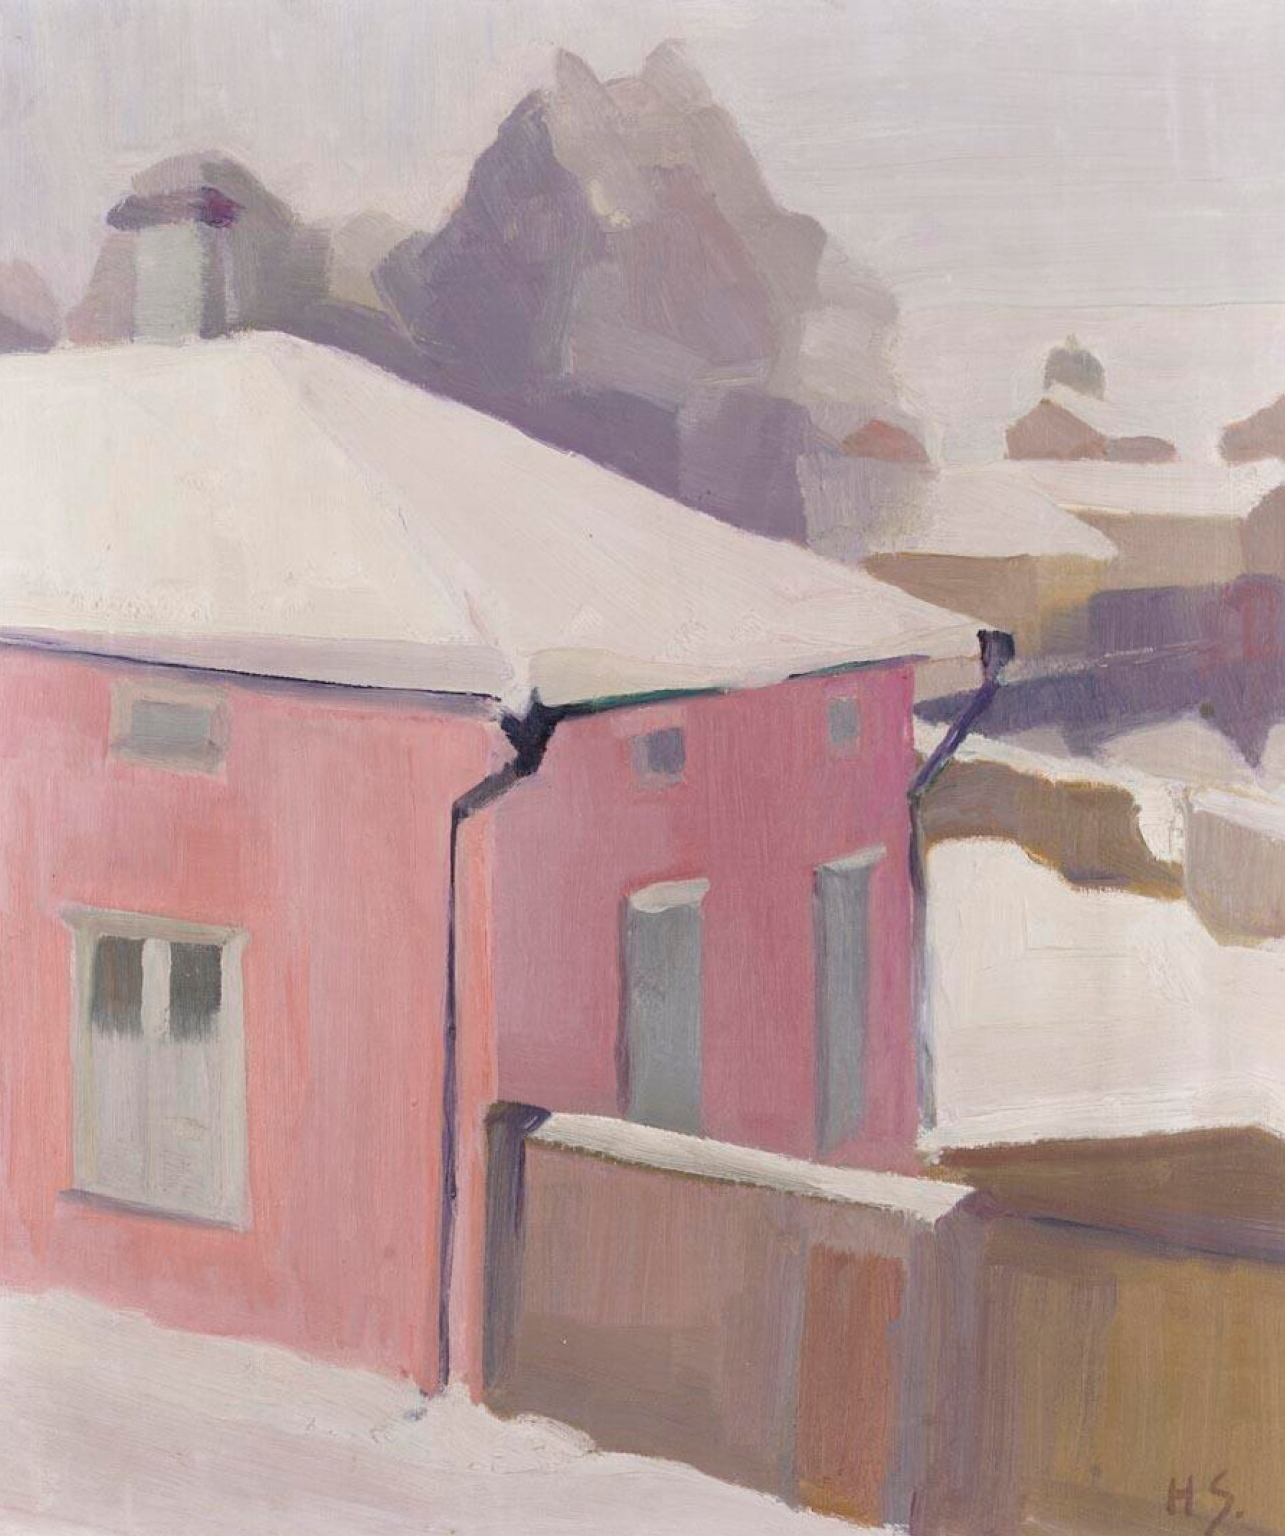 坦米薩裏的院子景色 by Helene Schjerfbeck - 1919–1920 - 42.5 x 36.5 cm 